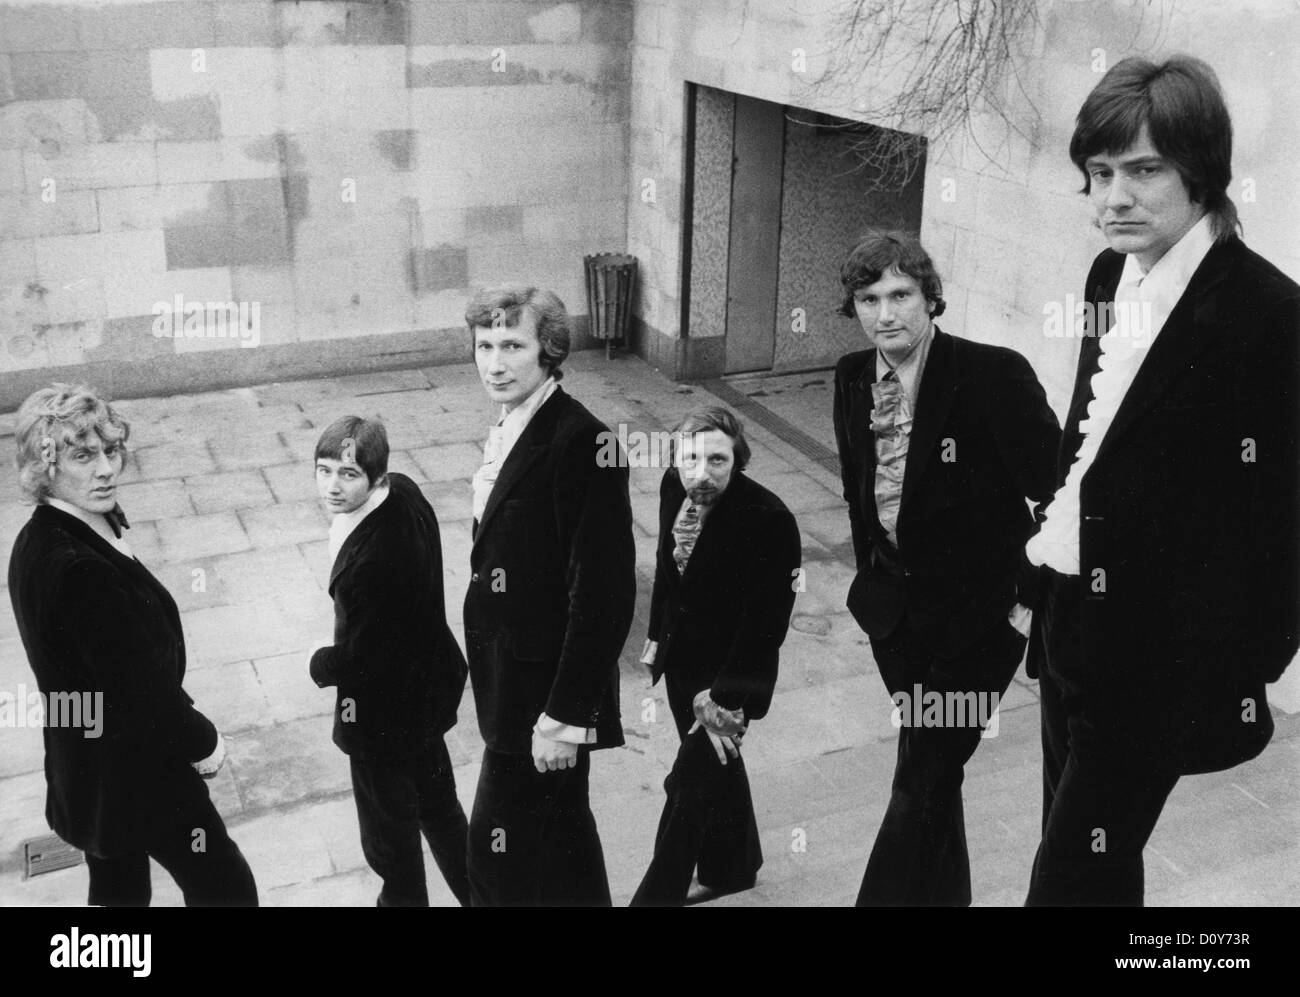 Photo de promotion CONSORTIUM groupe pop britannique vers 1985 Banque D'Images